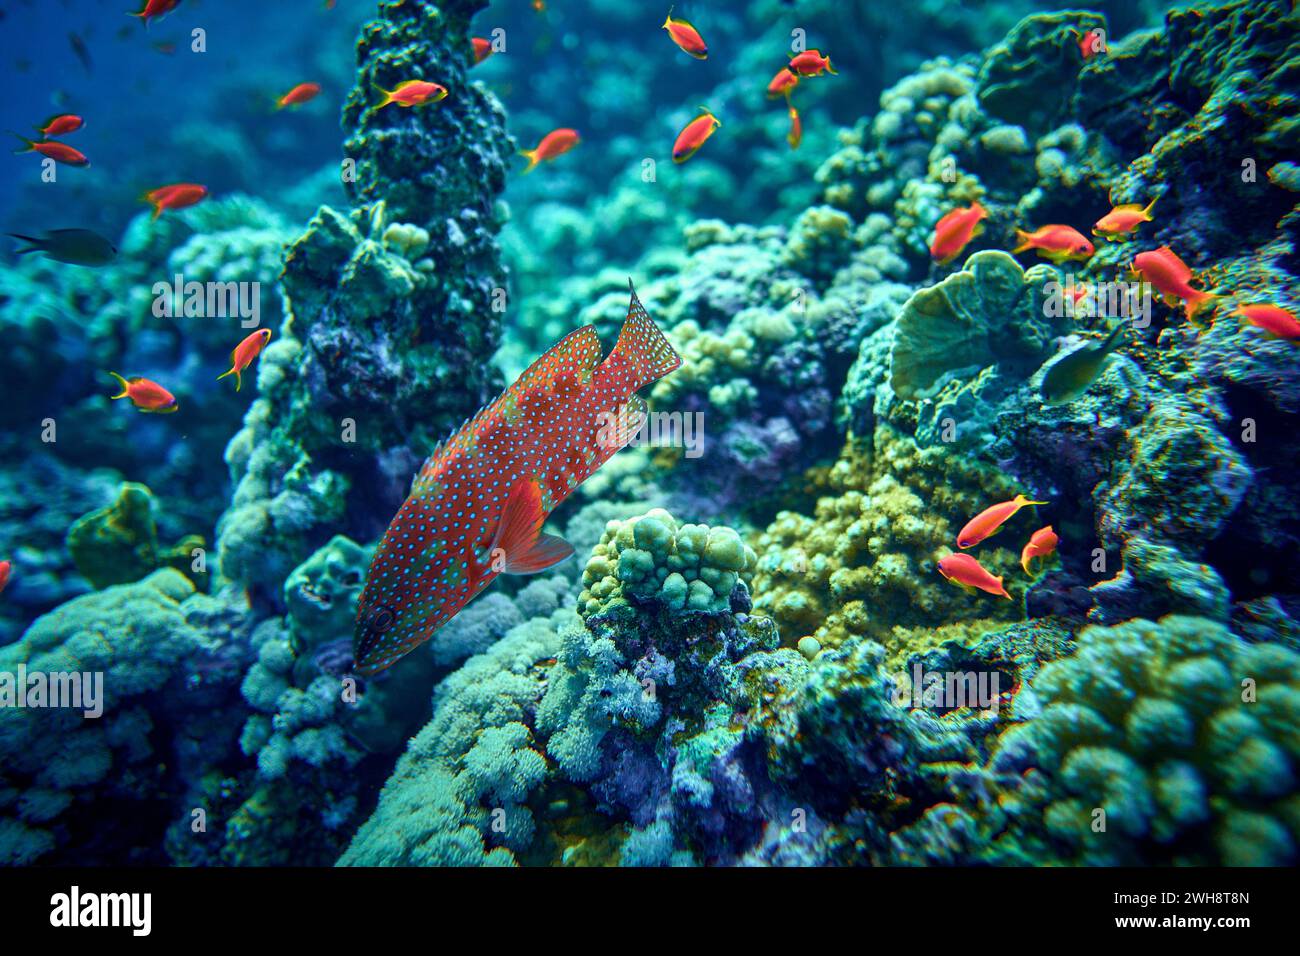 La bellezza del mondo sottomarino - i Groupers sono pesci di uno qualsiasi di un certo numero di generi della sottofamiglia Epinephelinae della famiglia Serranidae, nell'ordine Foto Stock